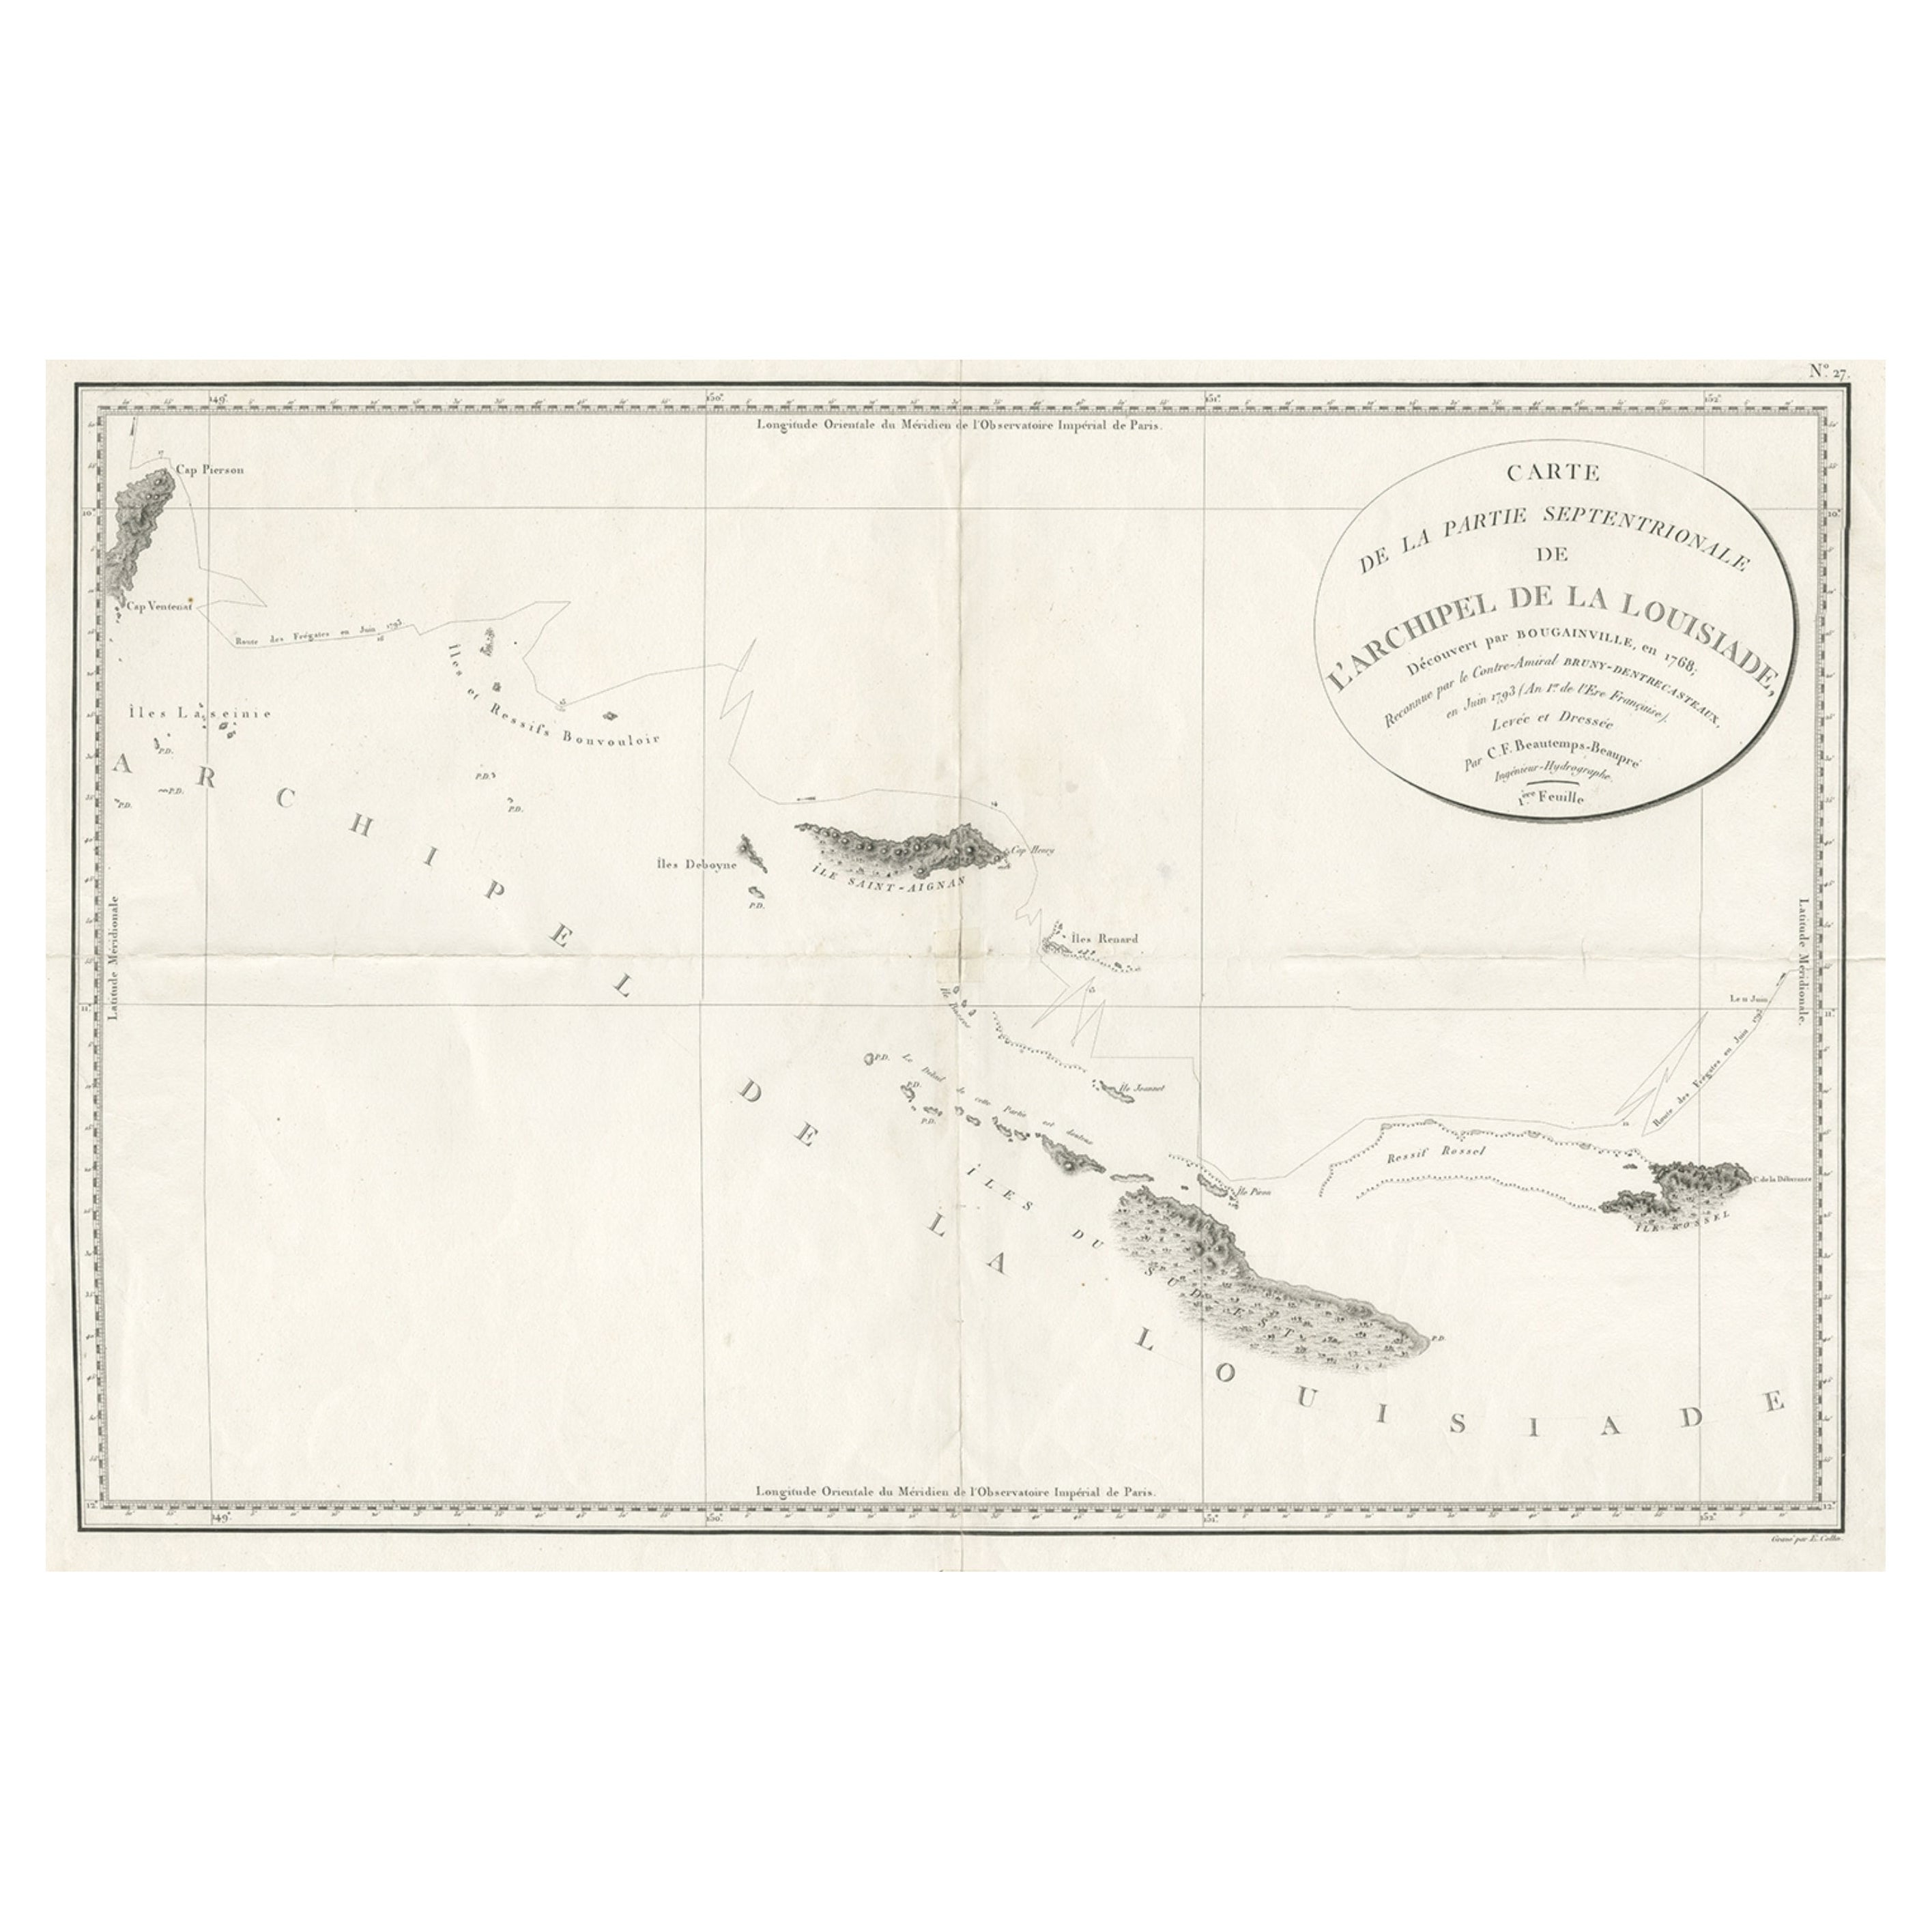 Ungewöhnliche seltene Karte mit dem Archipelago von Louisiade, Papua-Neuguinea, ca. 1798